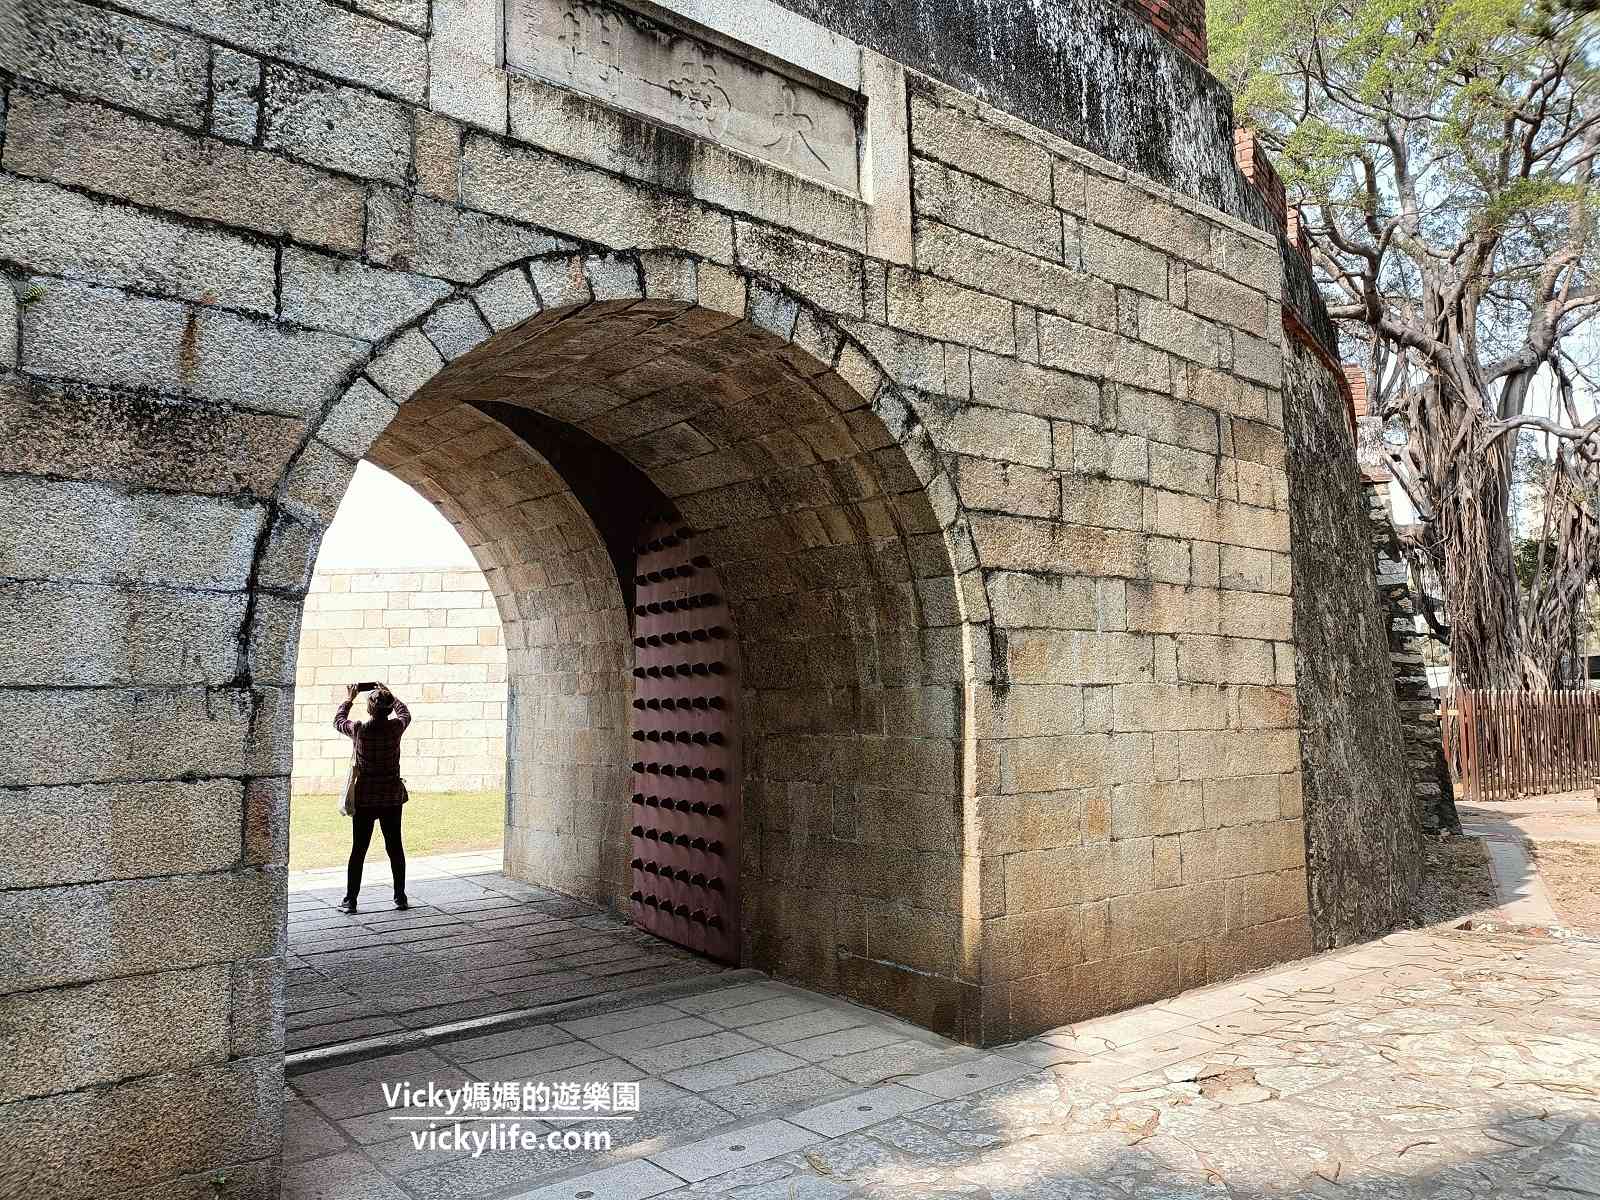 台南古蹟︱大南門 寧南門：走進城門，彷彿來到清朝時期，綠意盎然搭配紅磚城牆，這裡根本是城市裡的秘境